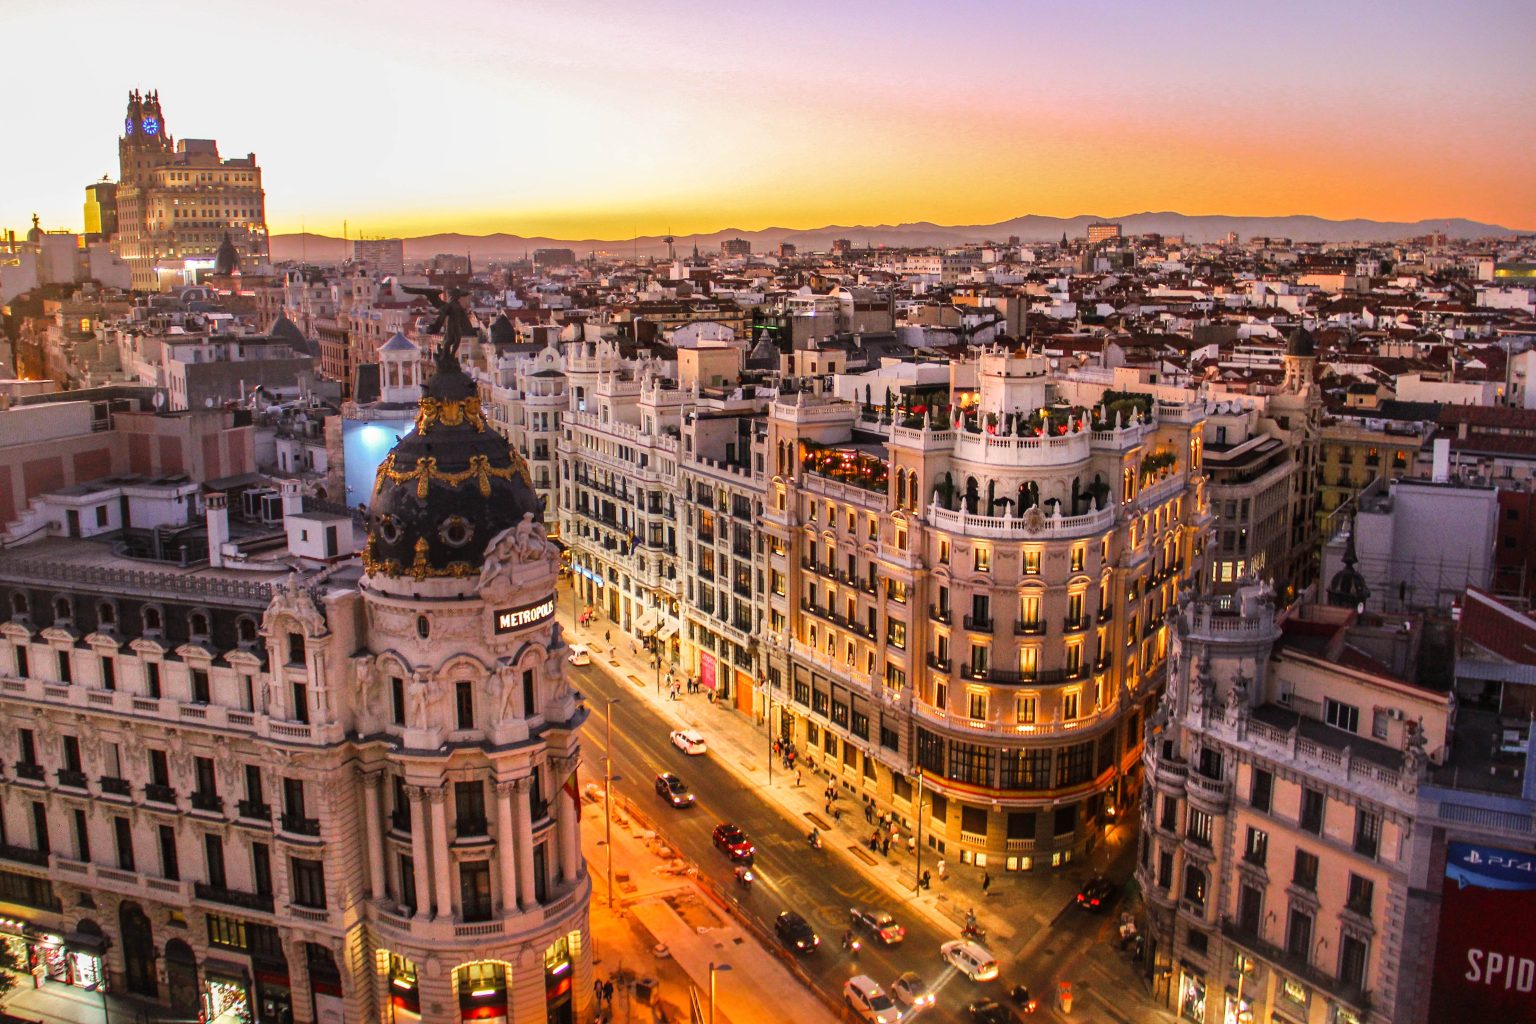 Sunset view of Gran Via in Madrid, Spain